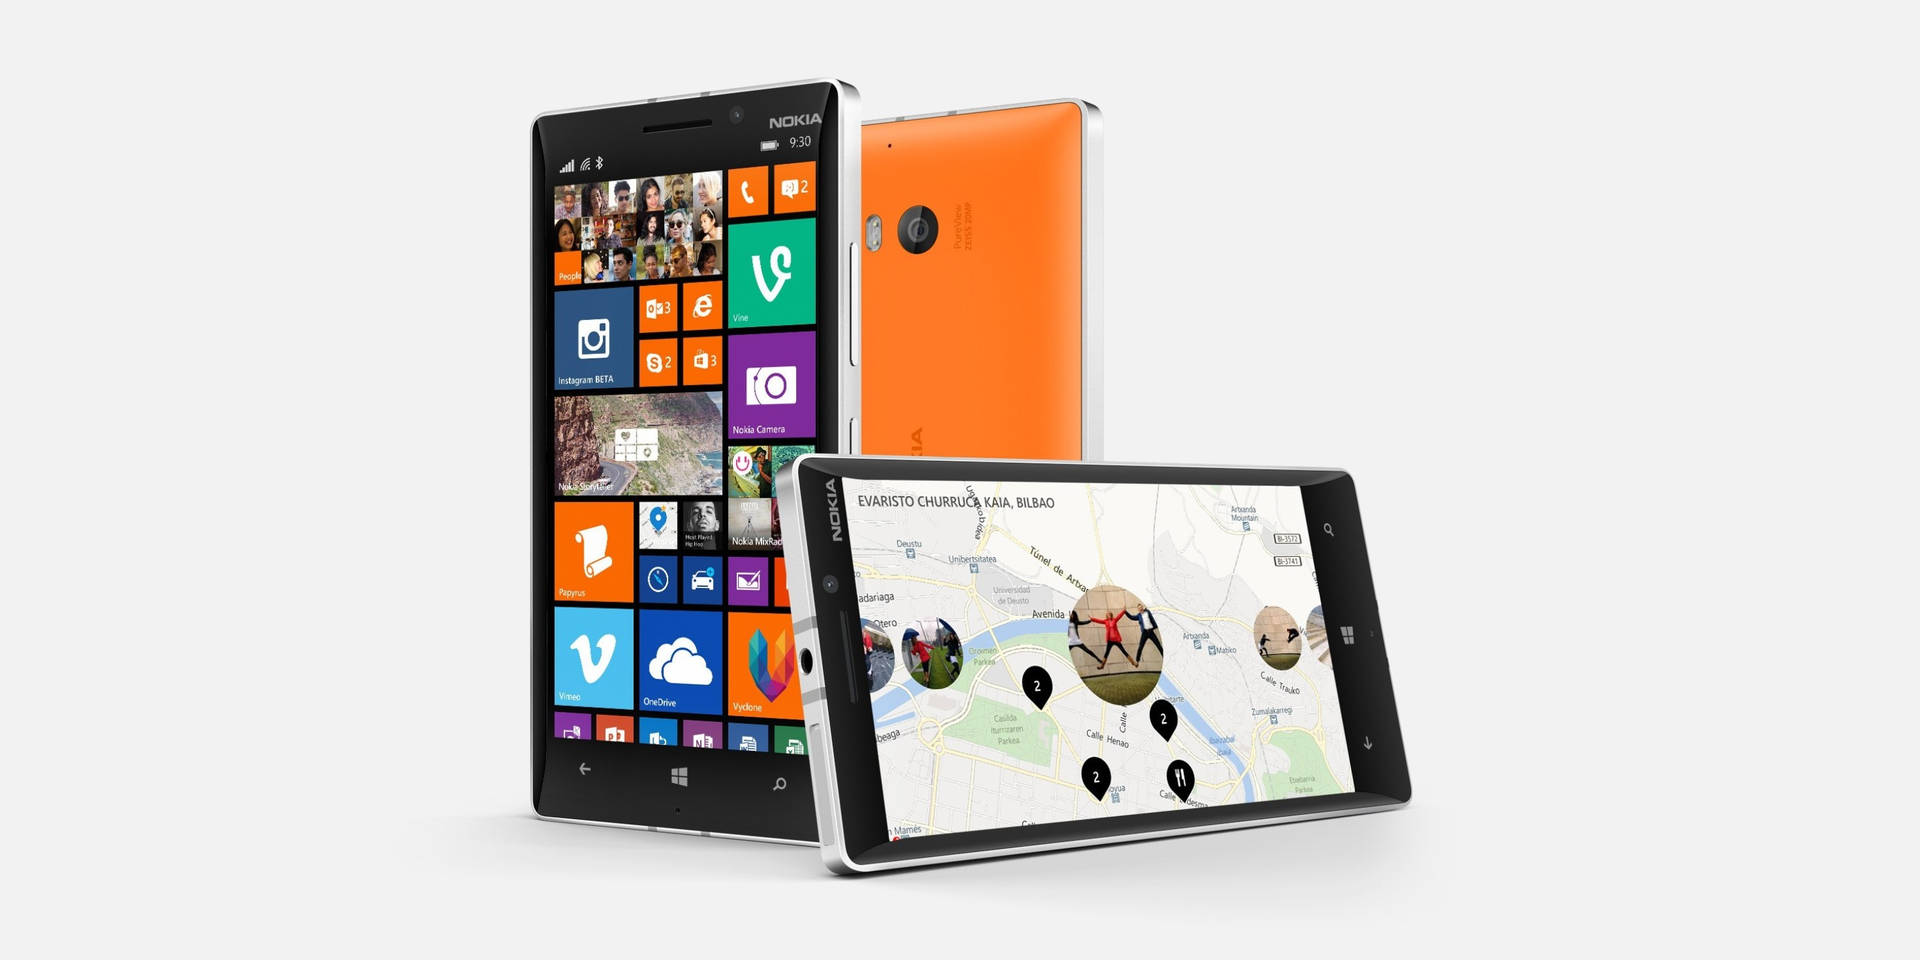 Modelo Nokia Lumia 930 Papel de Parede